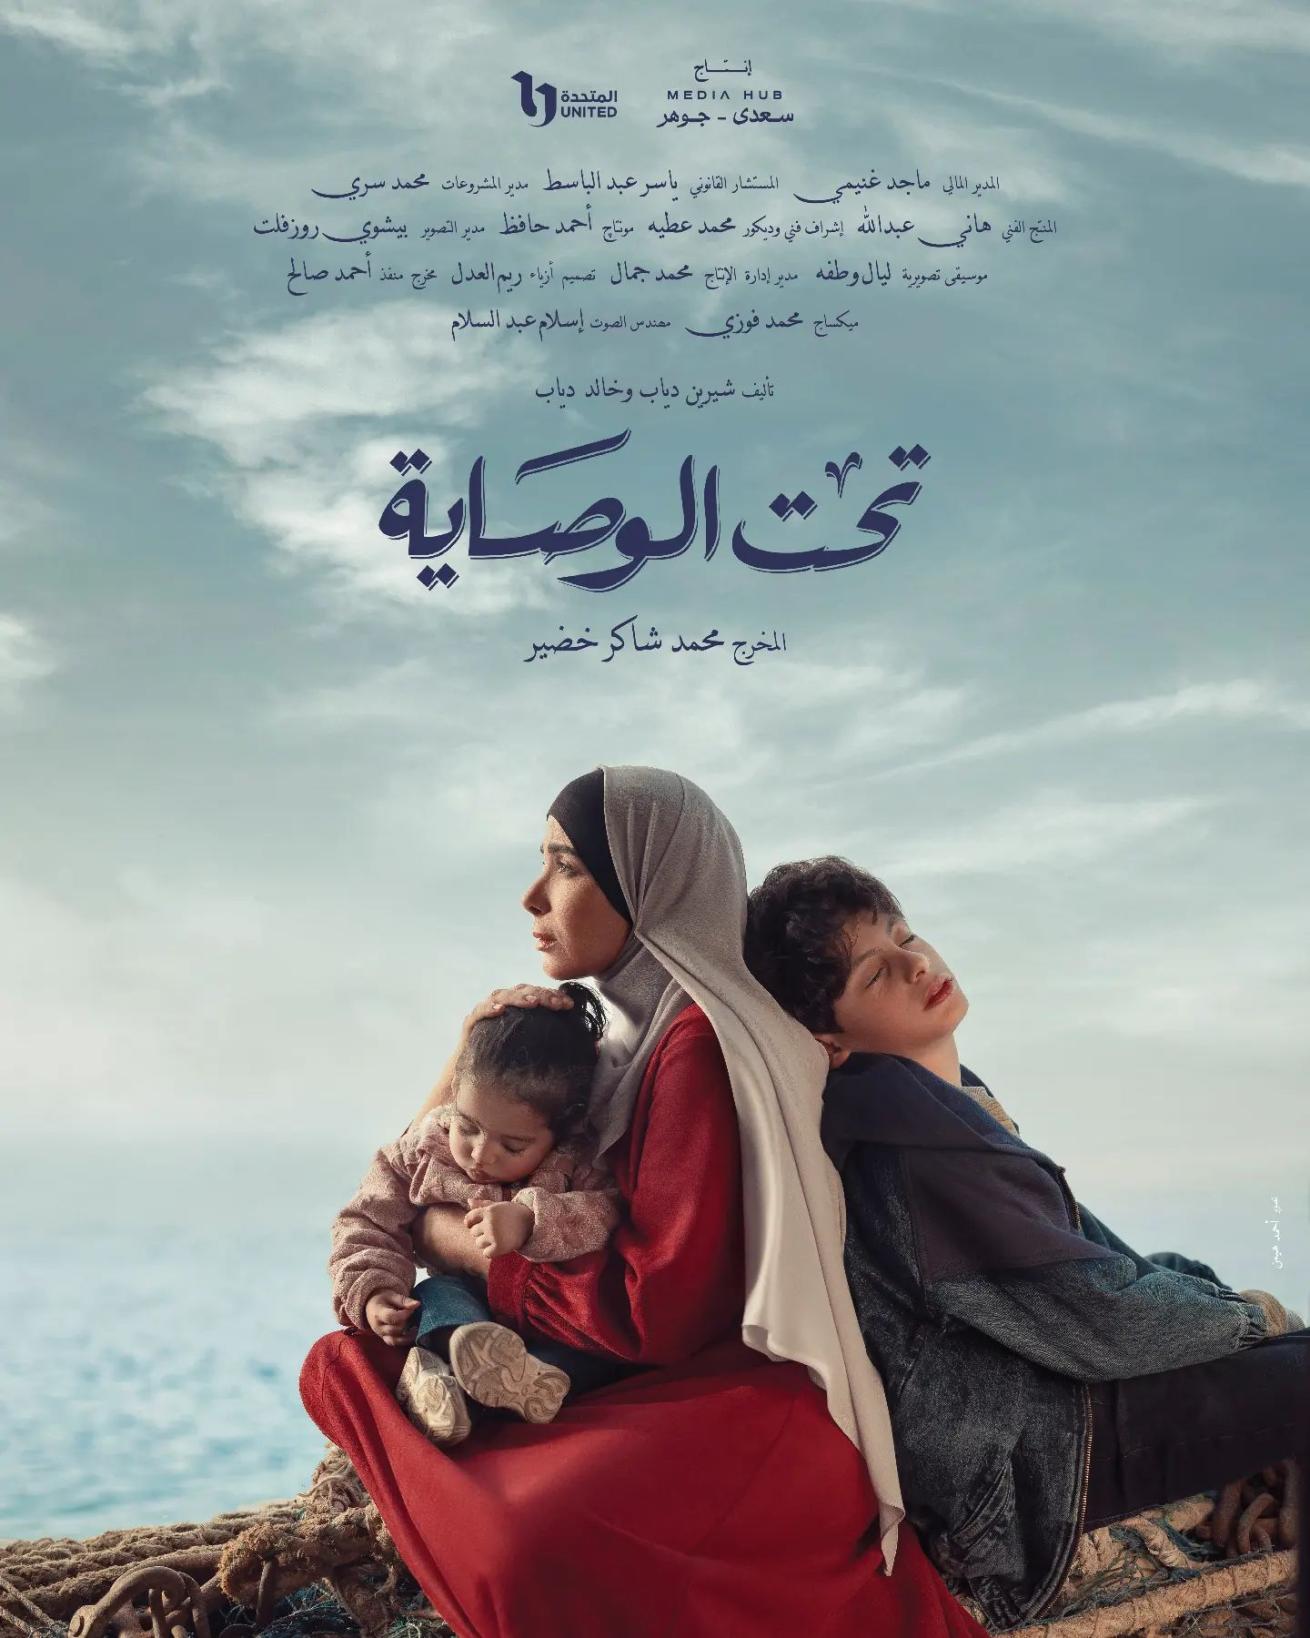 بوسترات المسلسلات المصرية في رمضان 2023، تحت الوصاية